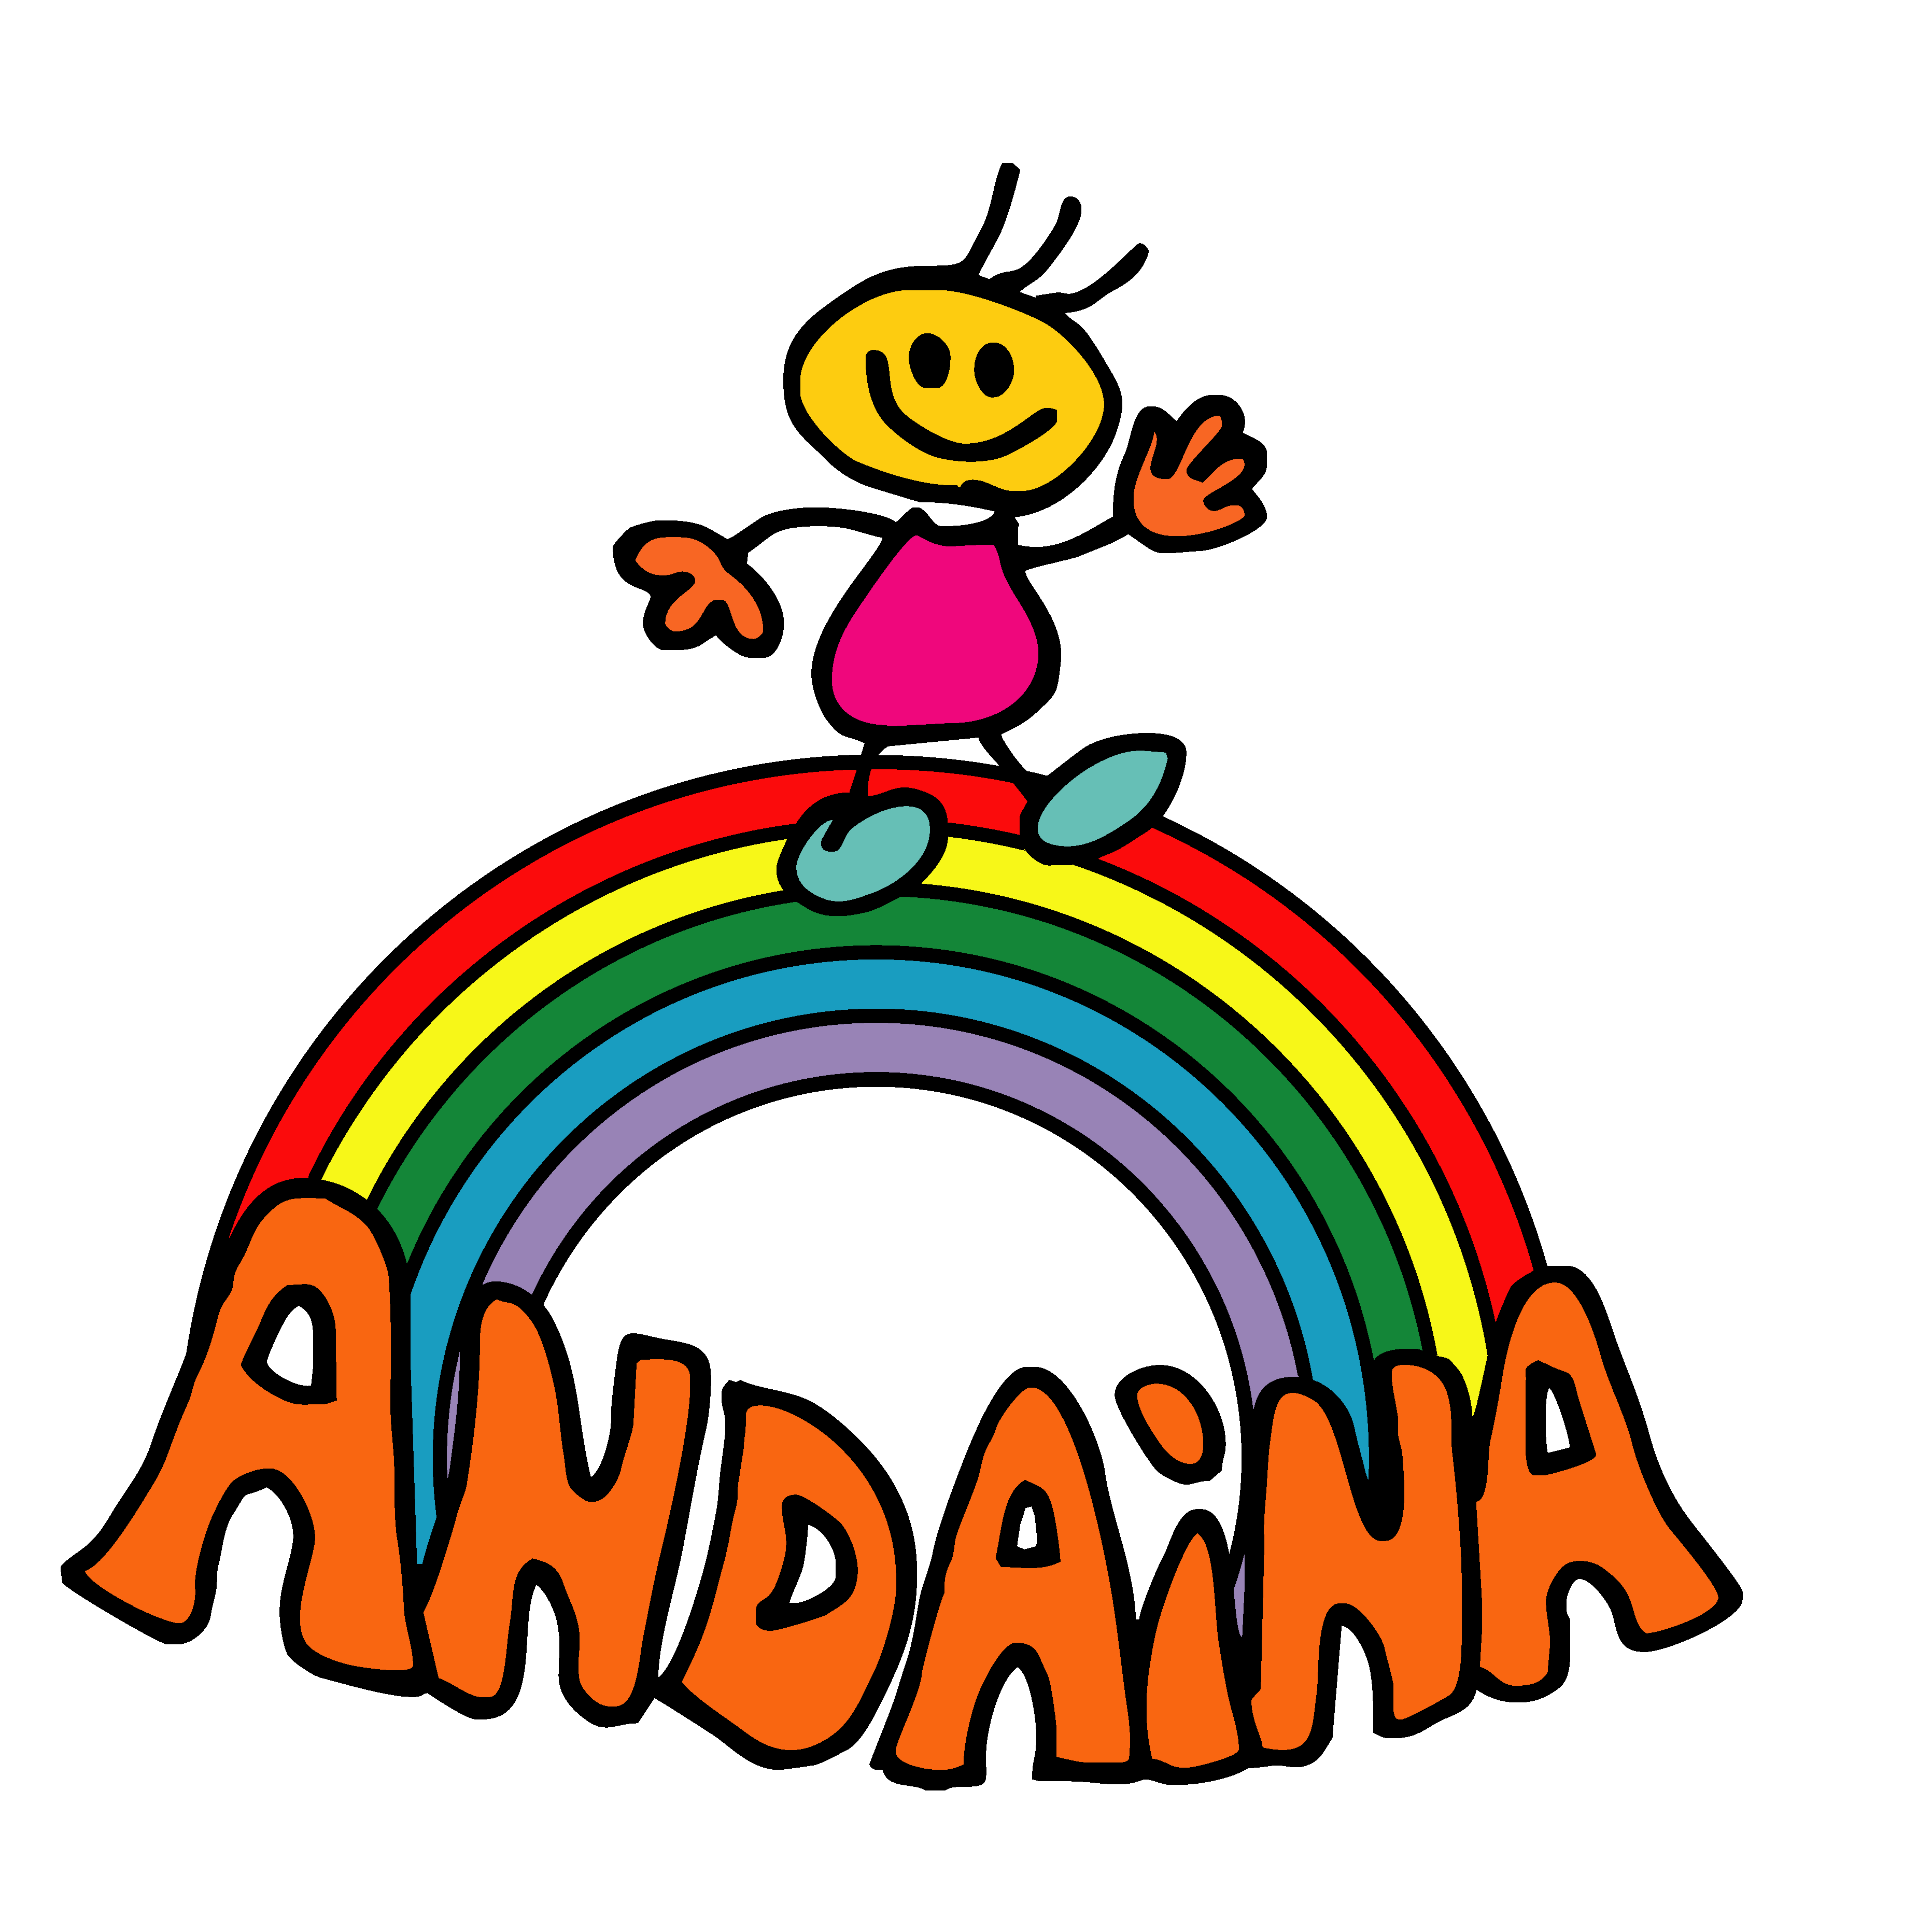 Asociación Andaina de persoas con diversidade funcional de Redondela - Su perfil. Votar, valora y comunicate